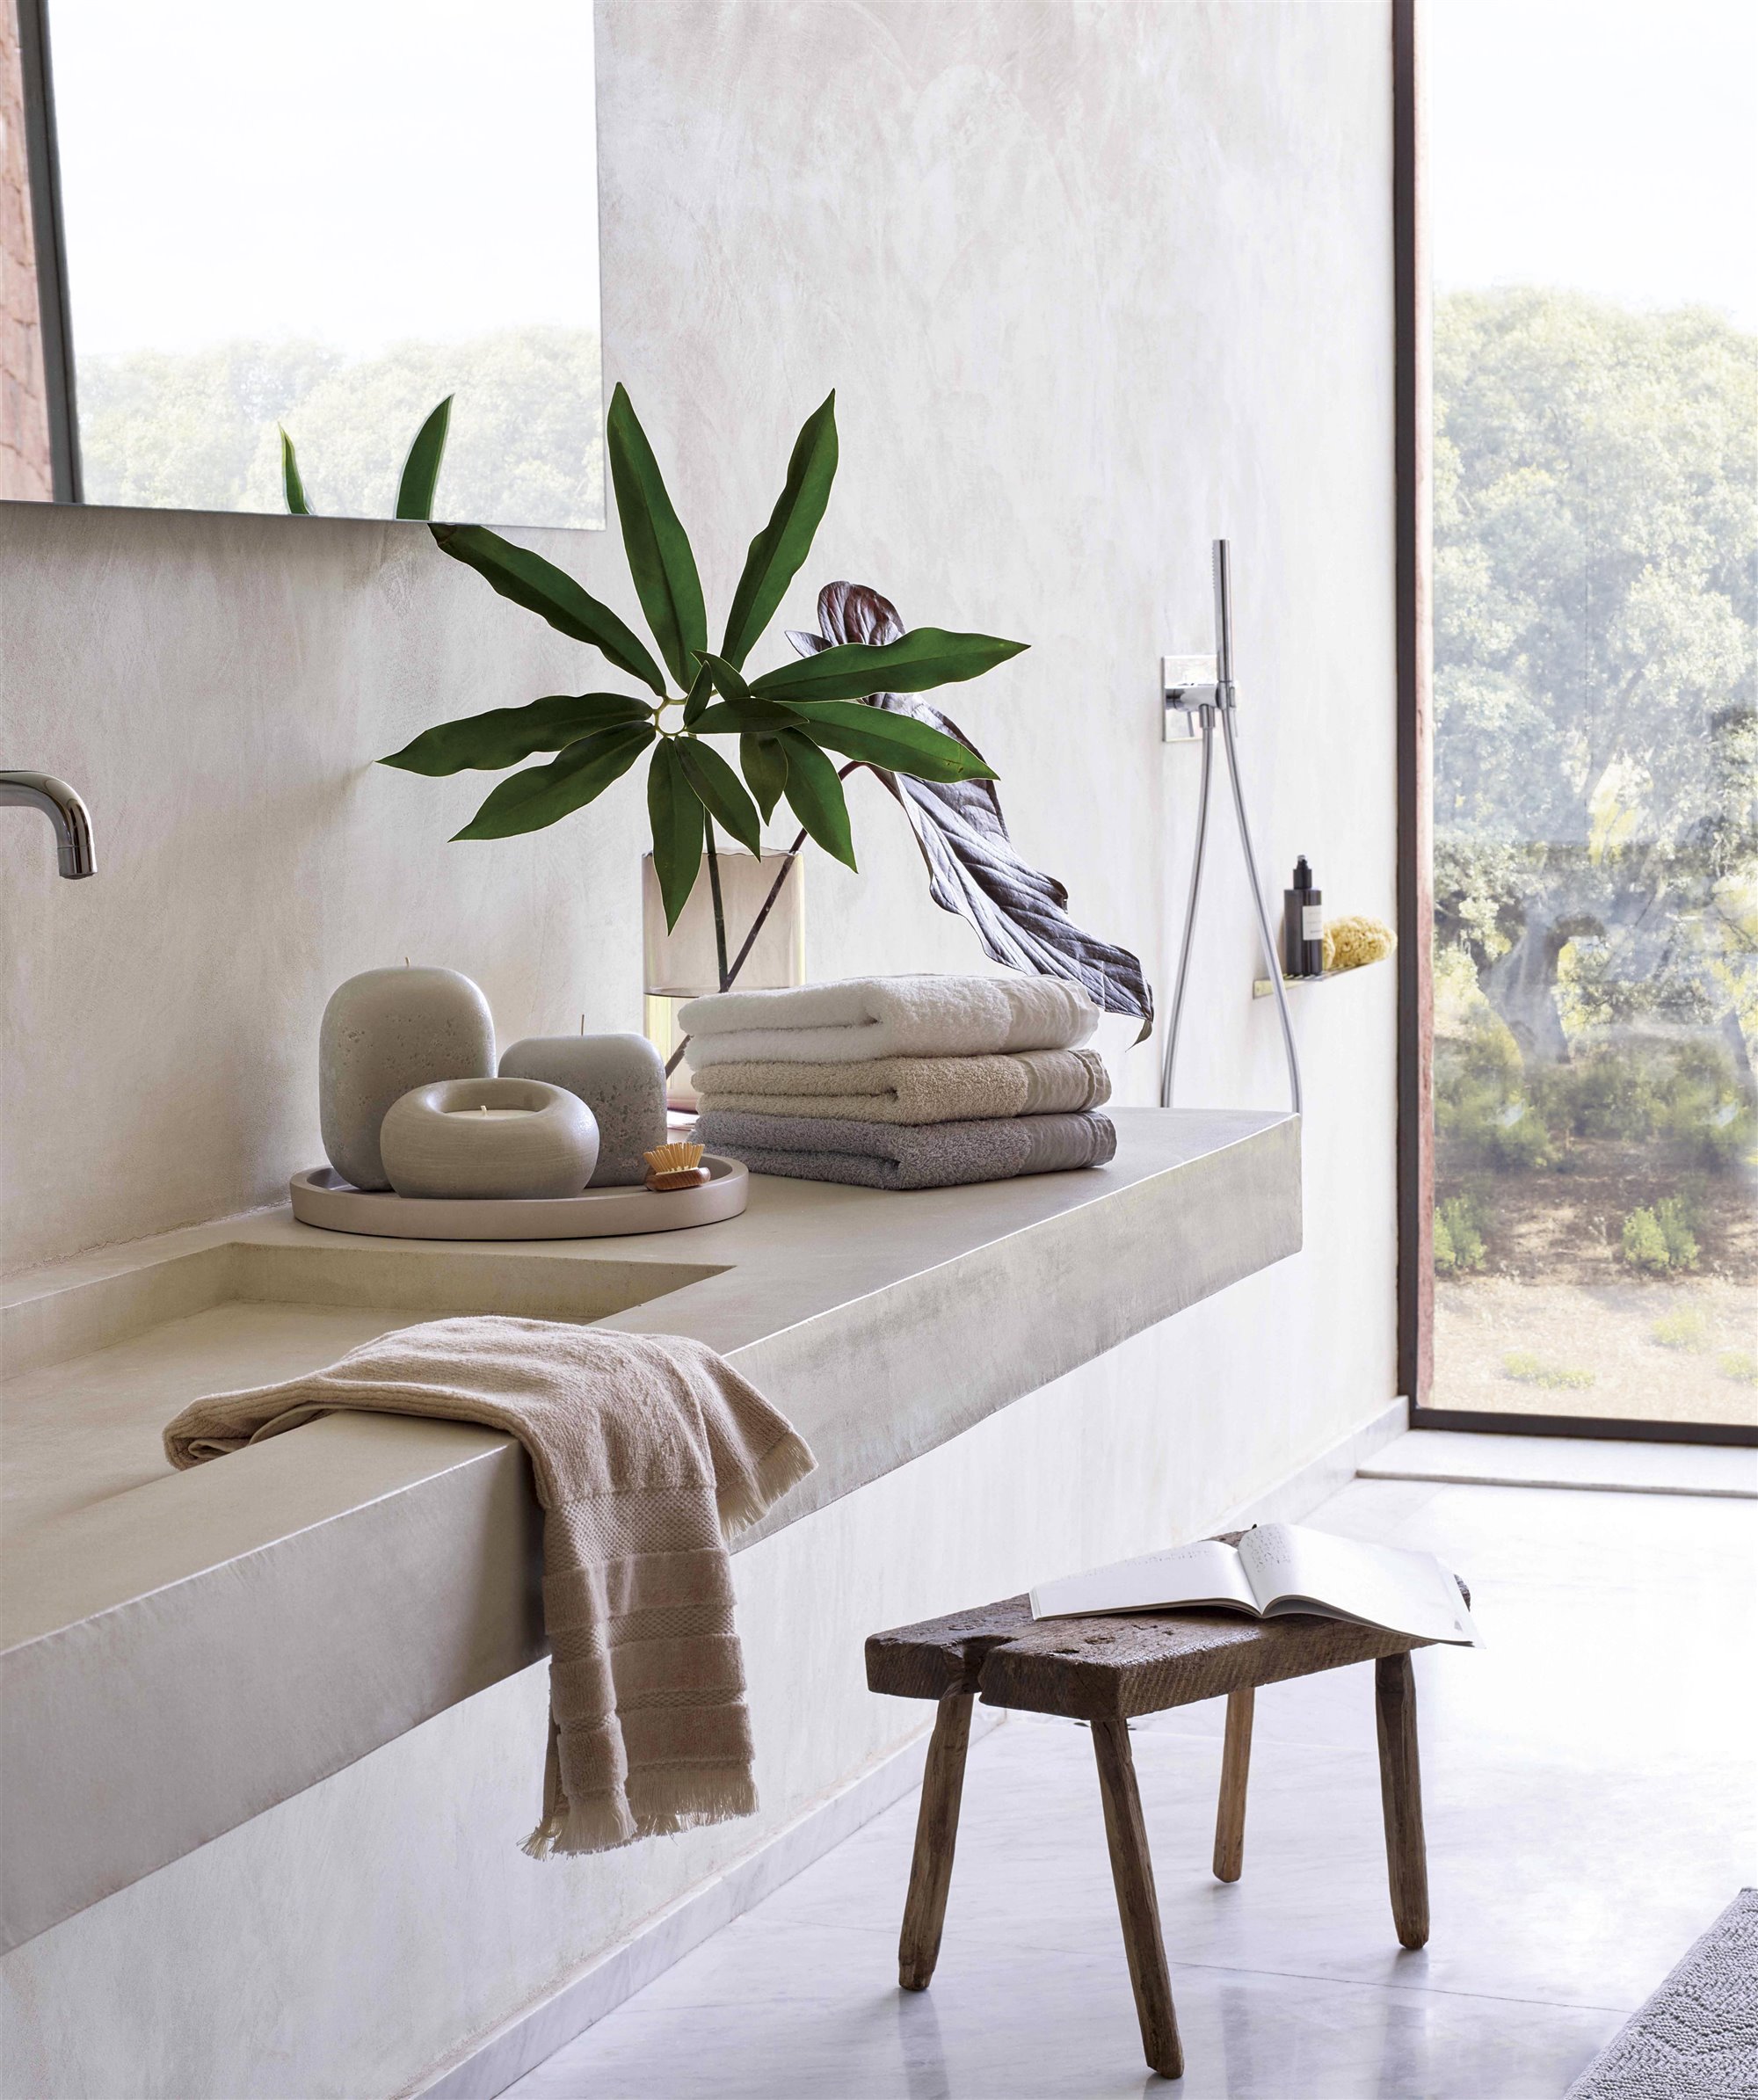 Baño minimalista de piedra gris con taburete de madera y planta 